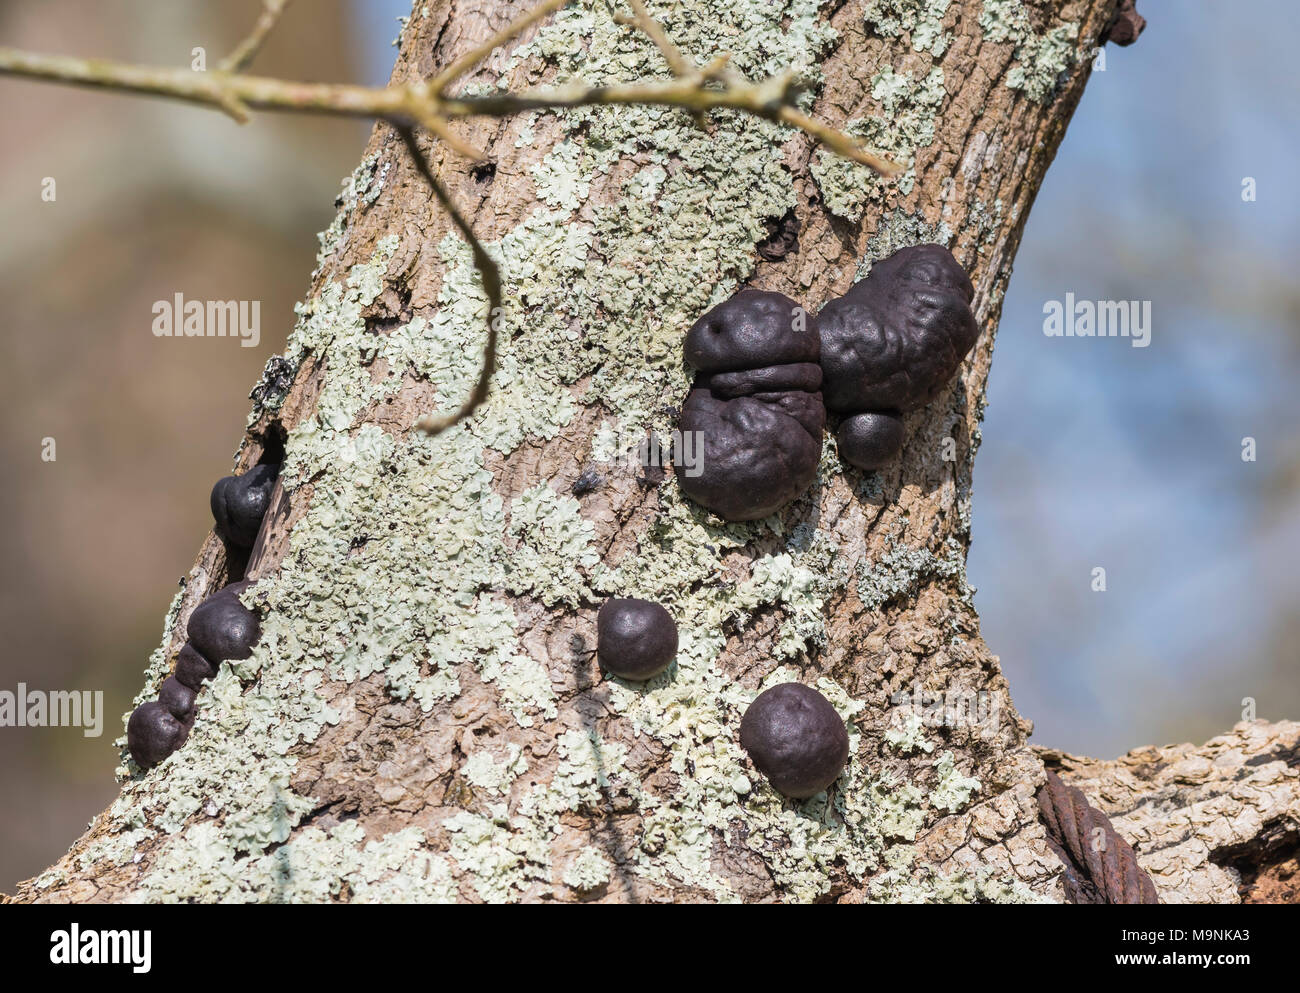 Le roi Alfred (Daldinia concentrica champignons Gâteaux, AKA crampon et boules champignon du charbon) poussant sur un arbre au printemps au Royaume-Uni. Champignon d'arbre. Banque D'Images